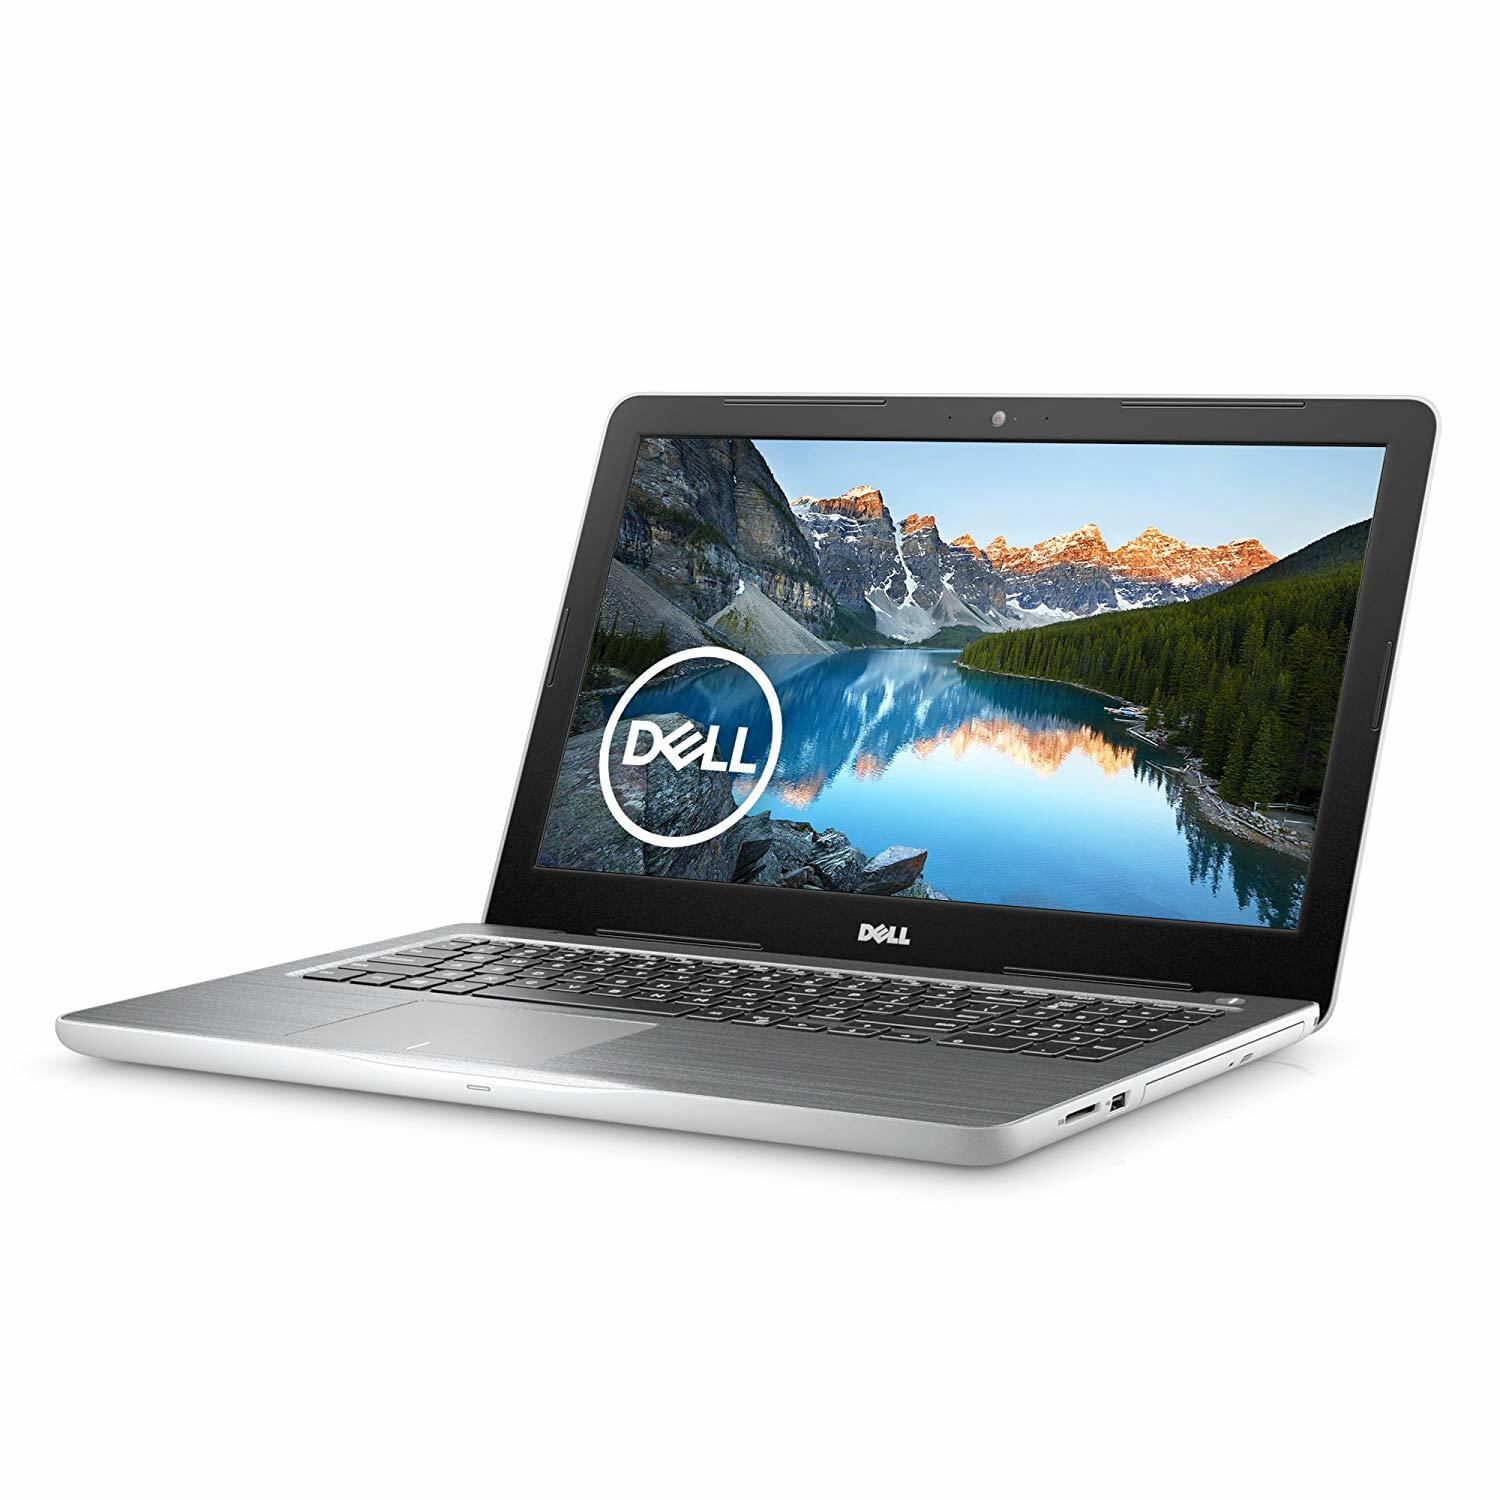 Dell ノートパソコン Inspiron 5565 AMD A6 Office ホワイト 19Q21HBW